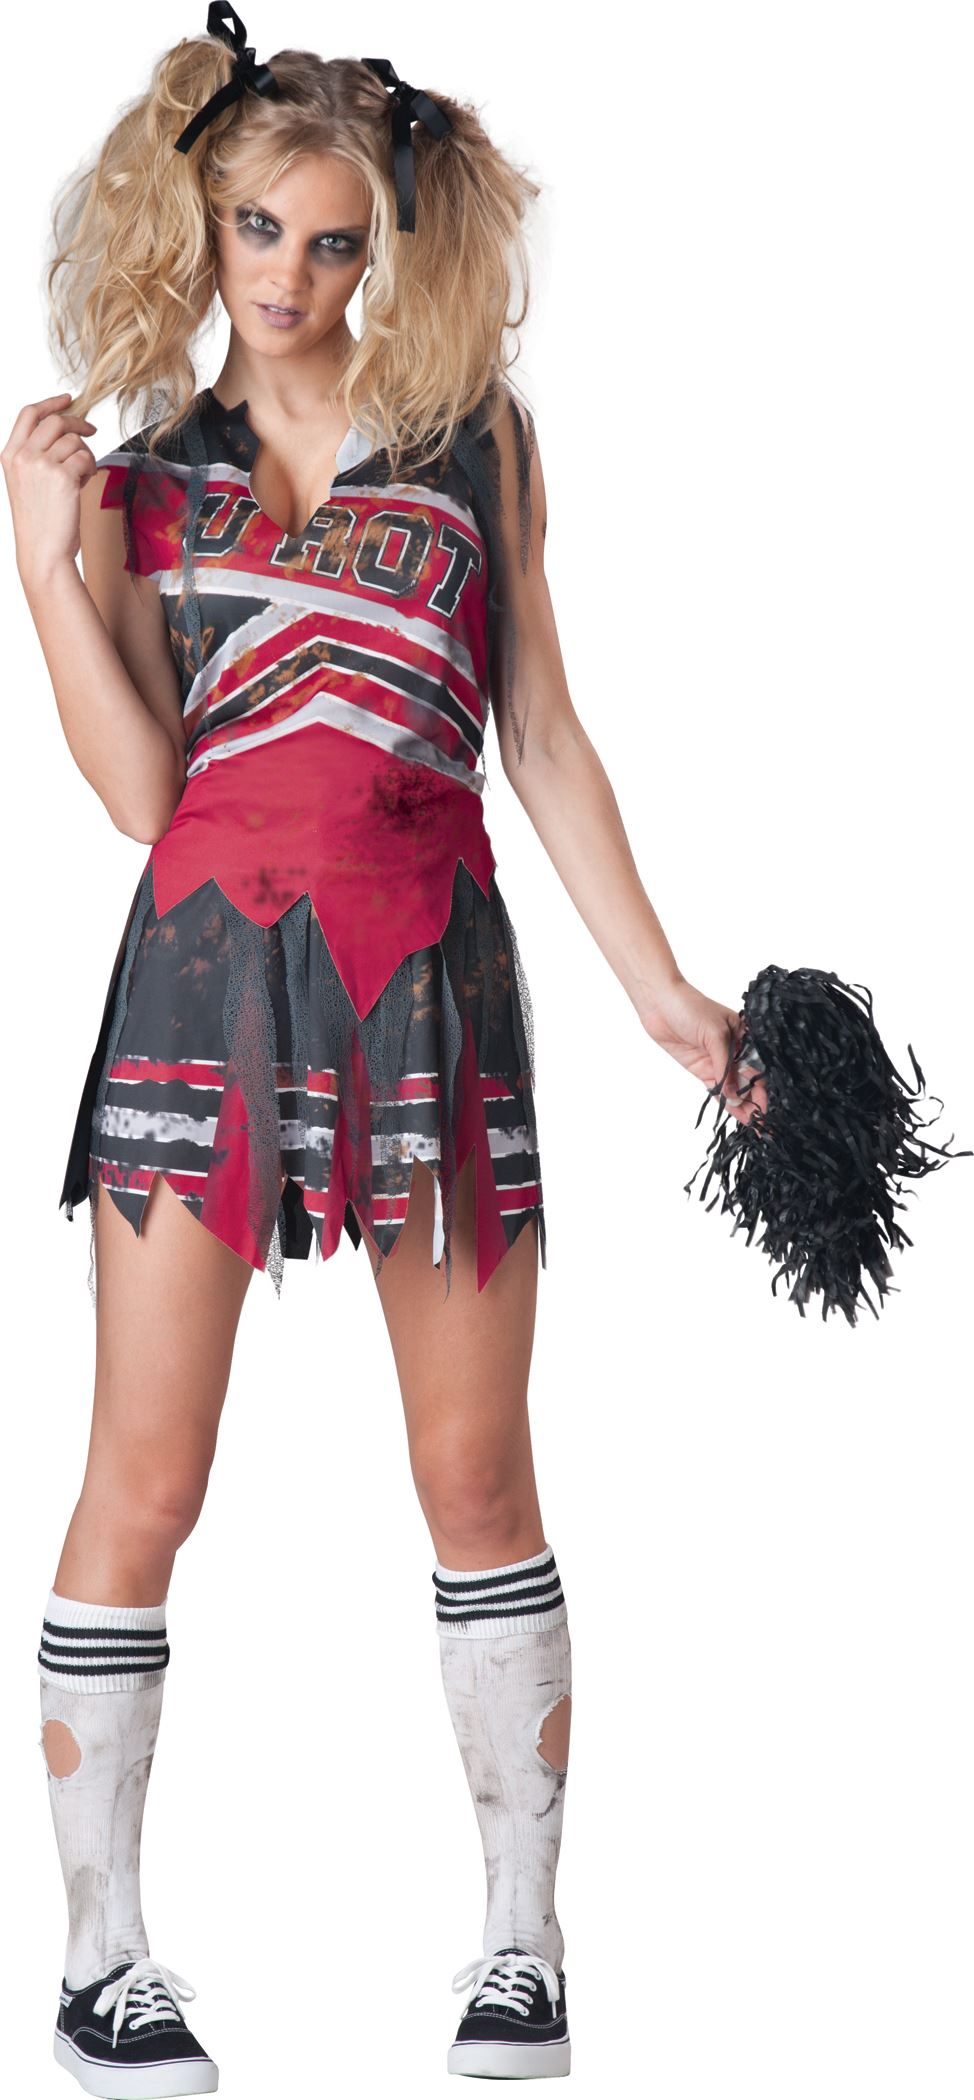 Adult Spiritless Zombie Cheerleader Women Costume 4199 The Costume Land 4526